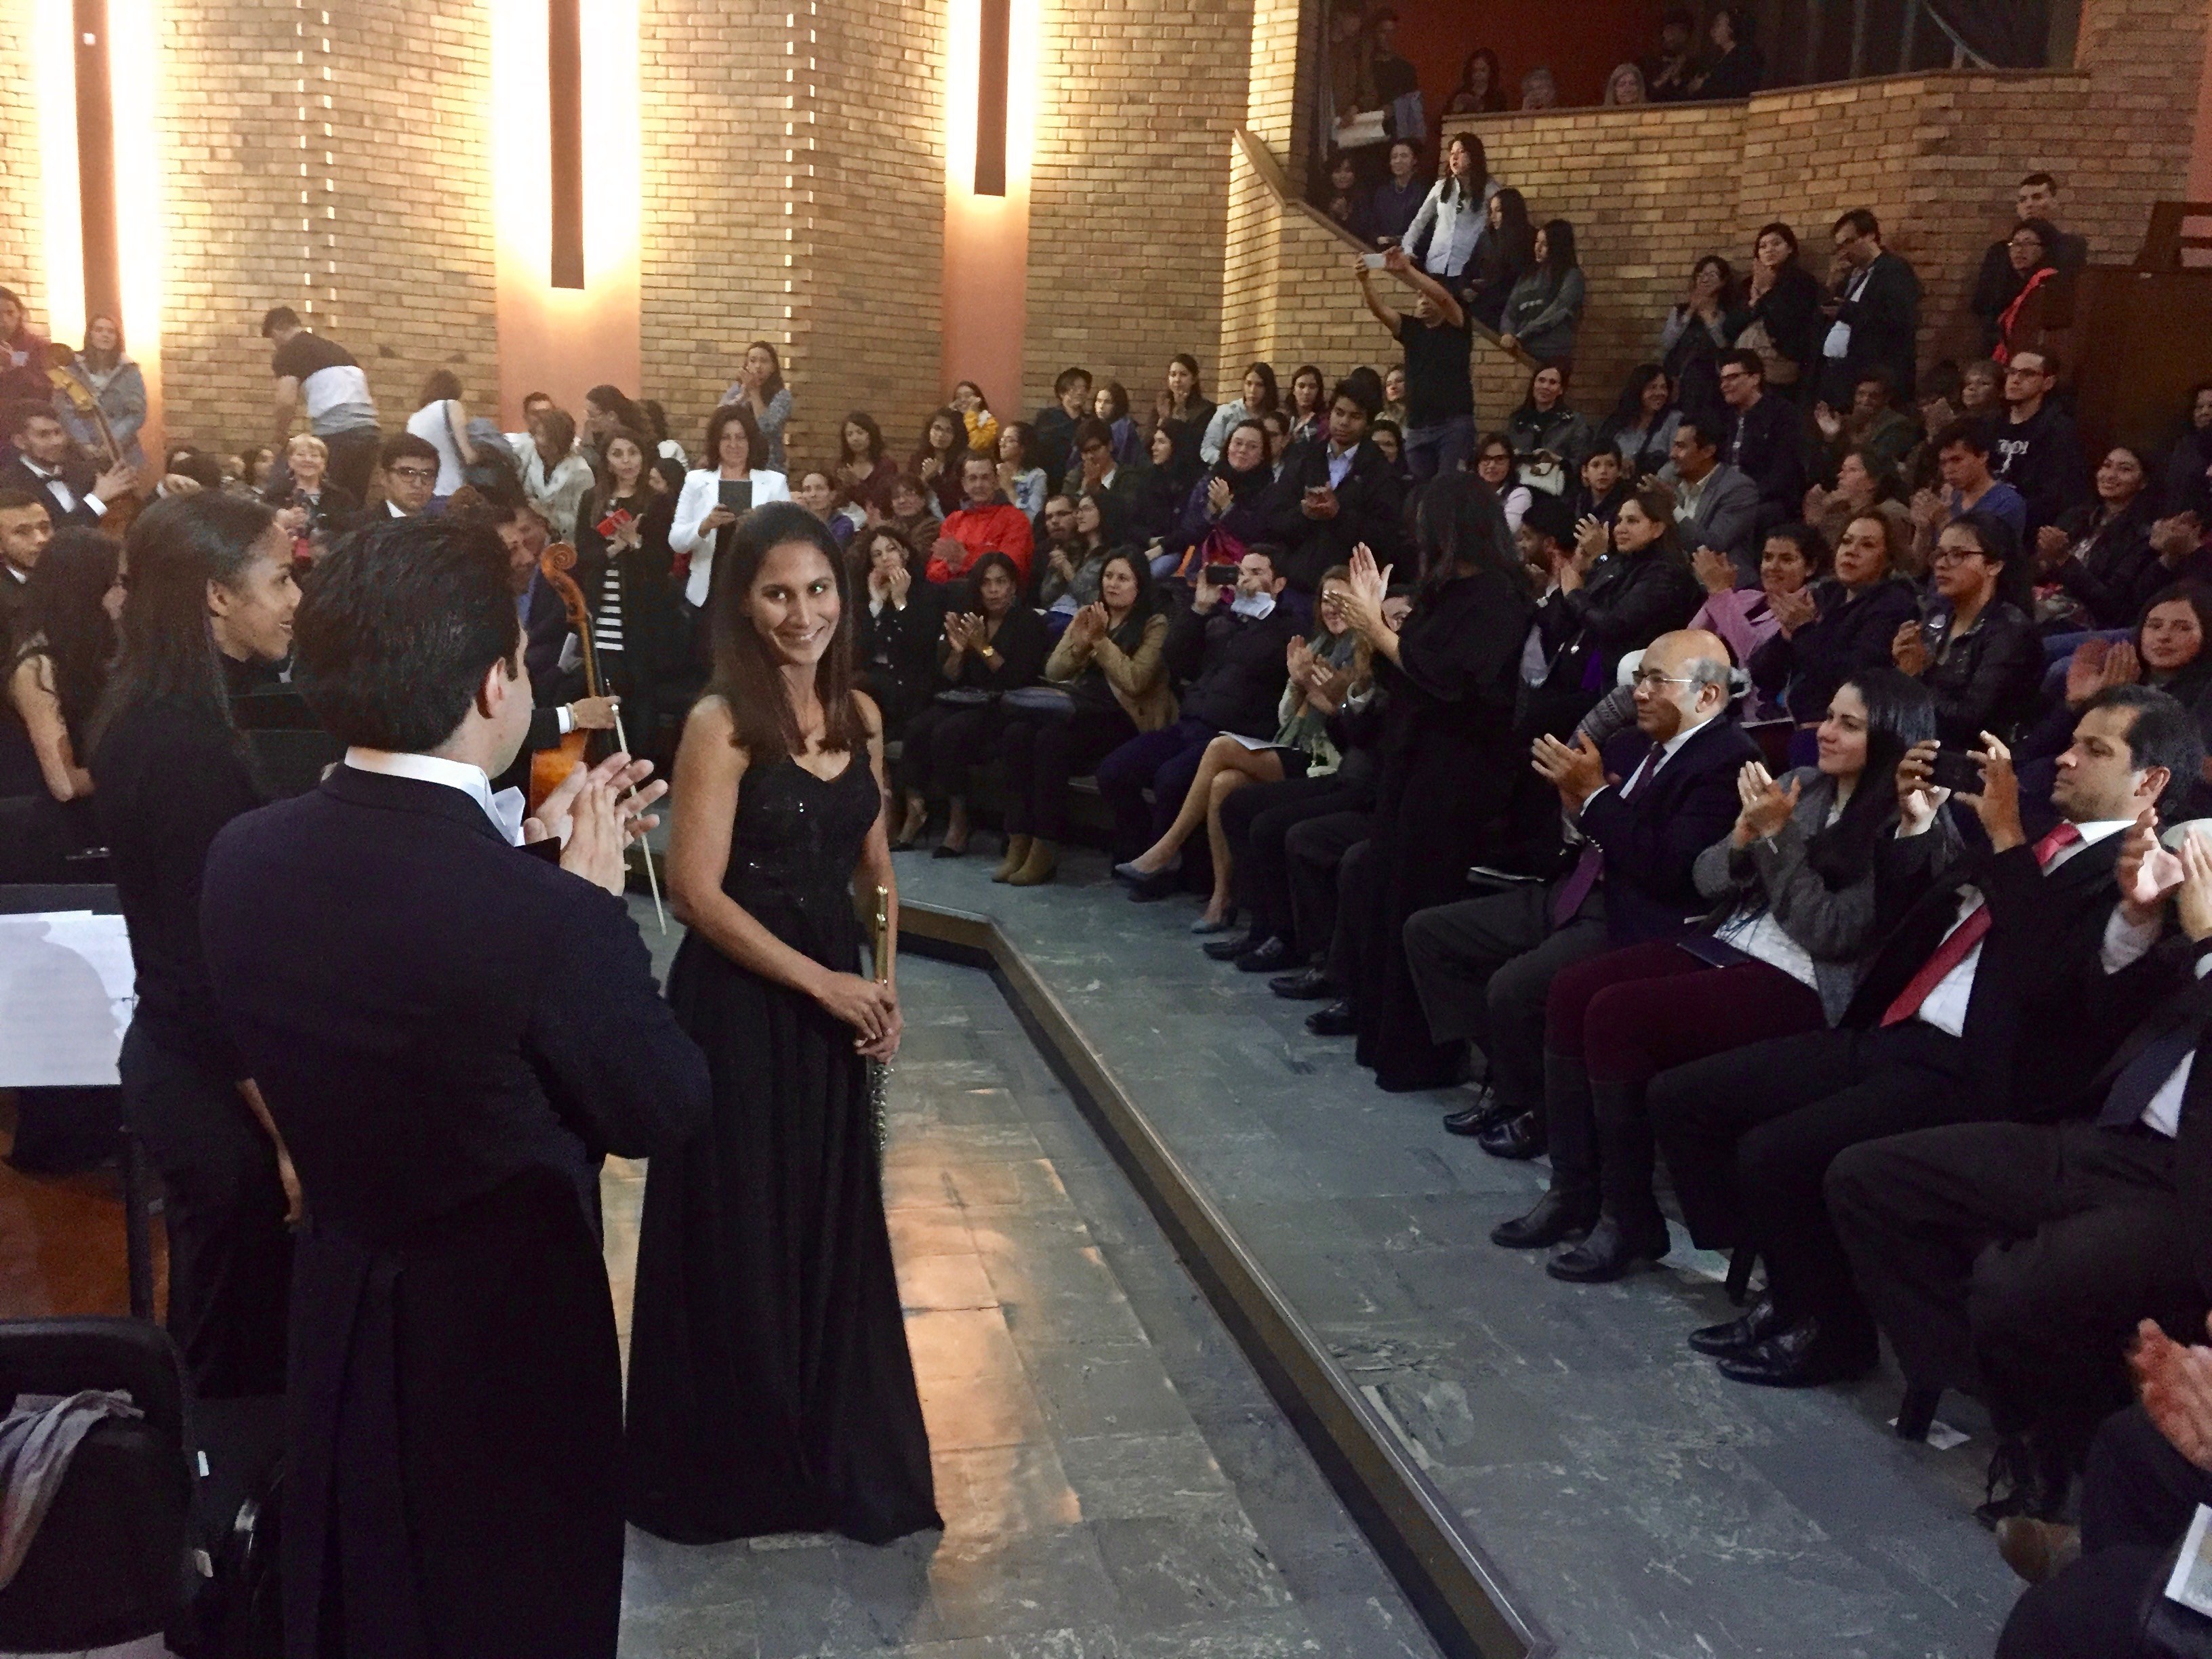  Flautista dominicana  Evelyn Peña Comas se presenta con la Camerata Filarmónica de Bogotá